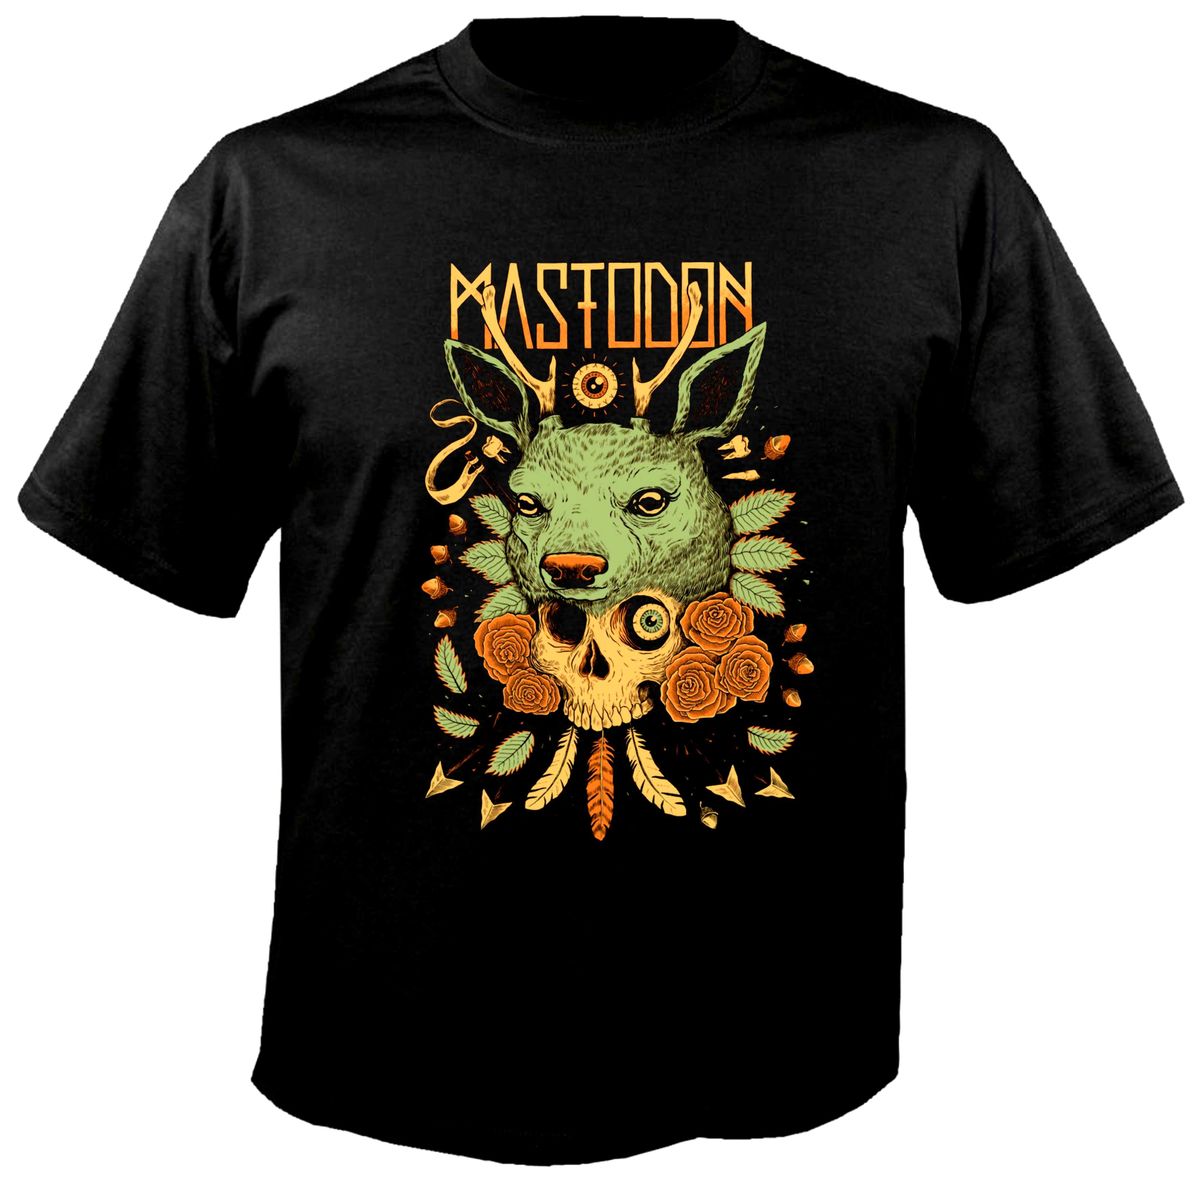 Mastodon T-Shirt â Metal & Rock T-shirts and Accessories